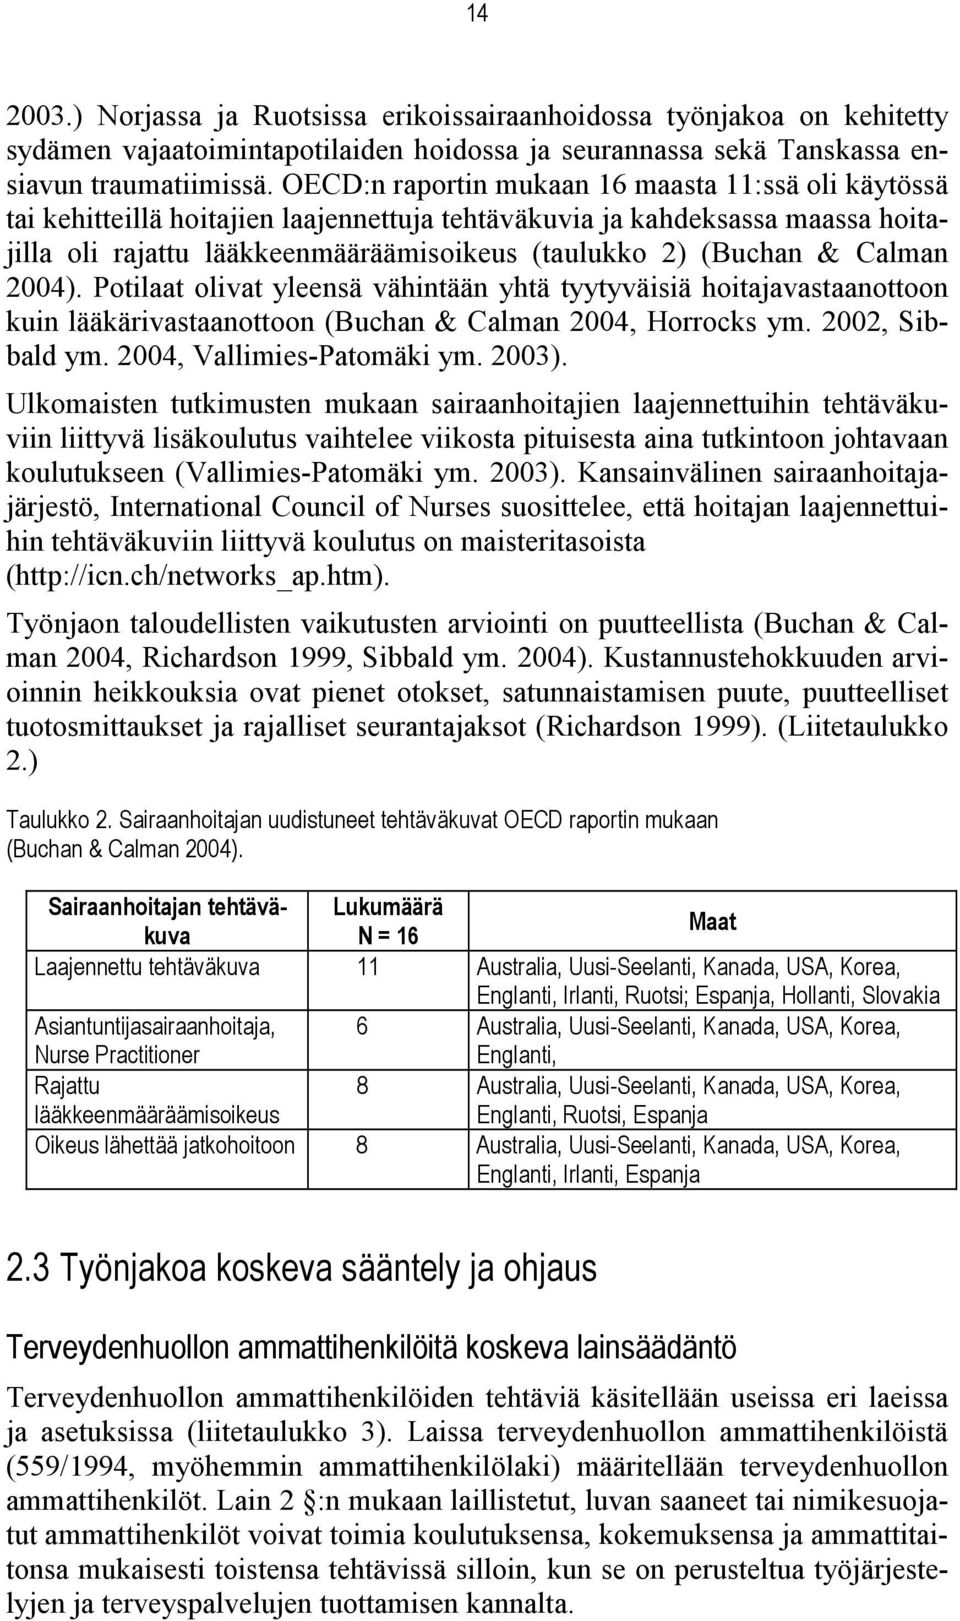 Calman 2004). Potilaat olivat yleensä vähintään yhtä tyytyväisiä hoitajavastaanottoon kuin lääkärivastaanottoon (Buchan & Calman 2004, Horrocks ym. 2002, Sibbald ym. 2004, Vallimies-Patomäki ym.